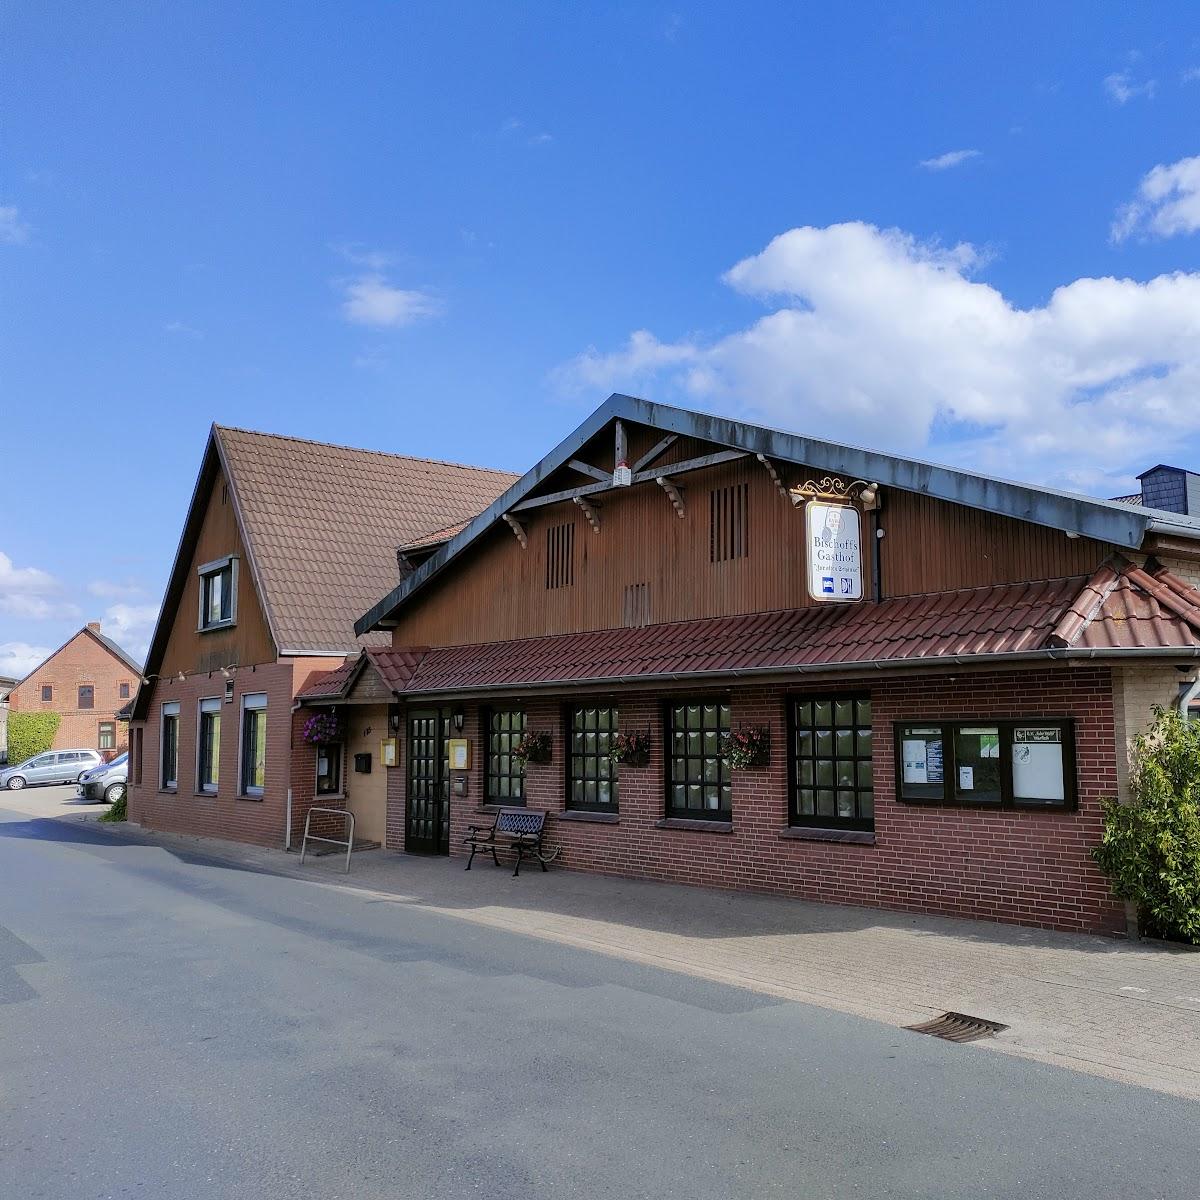 Restaurant "Bischoffs Gasthof  Zur alten Schänke " in Berne